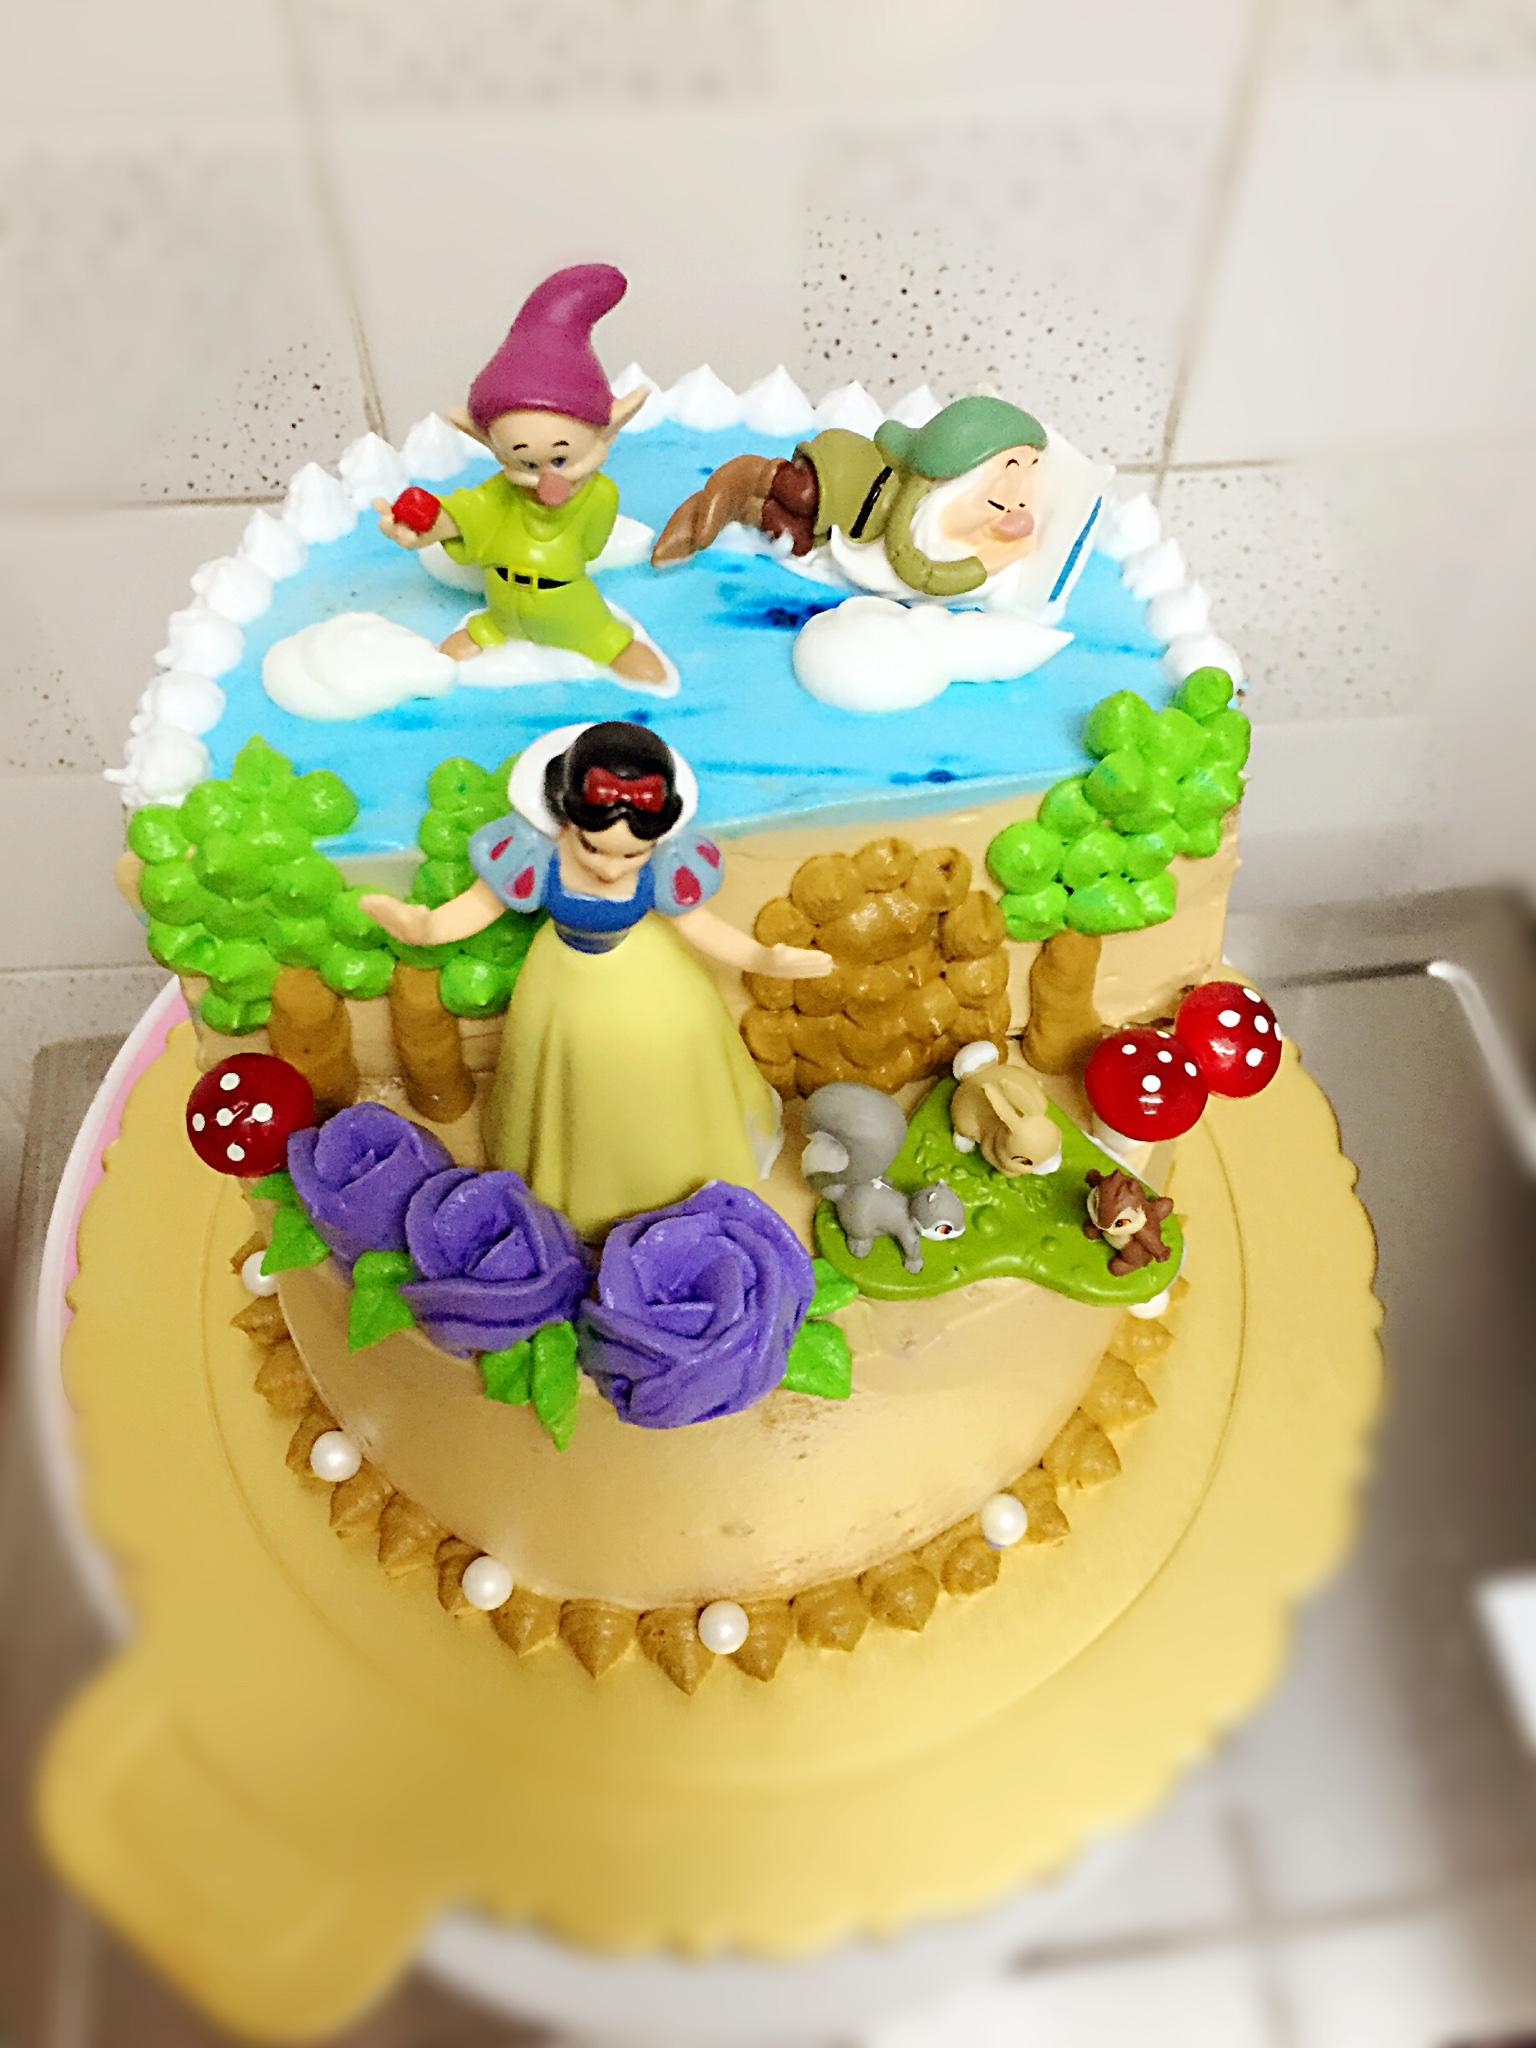 白雪公主生日蛋糕 公主场景蛋糕的做法